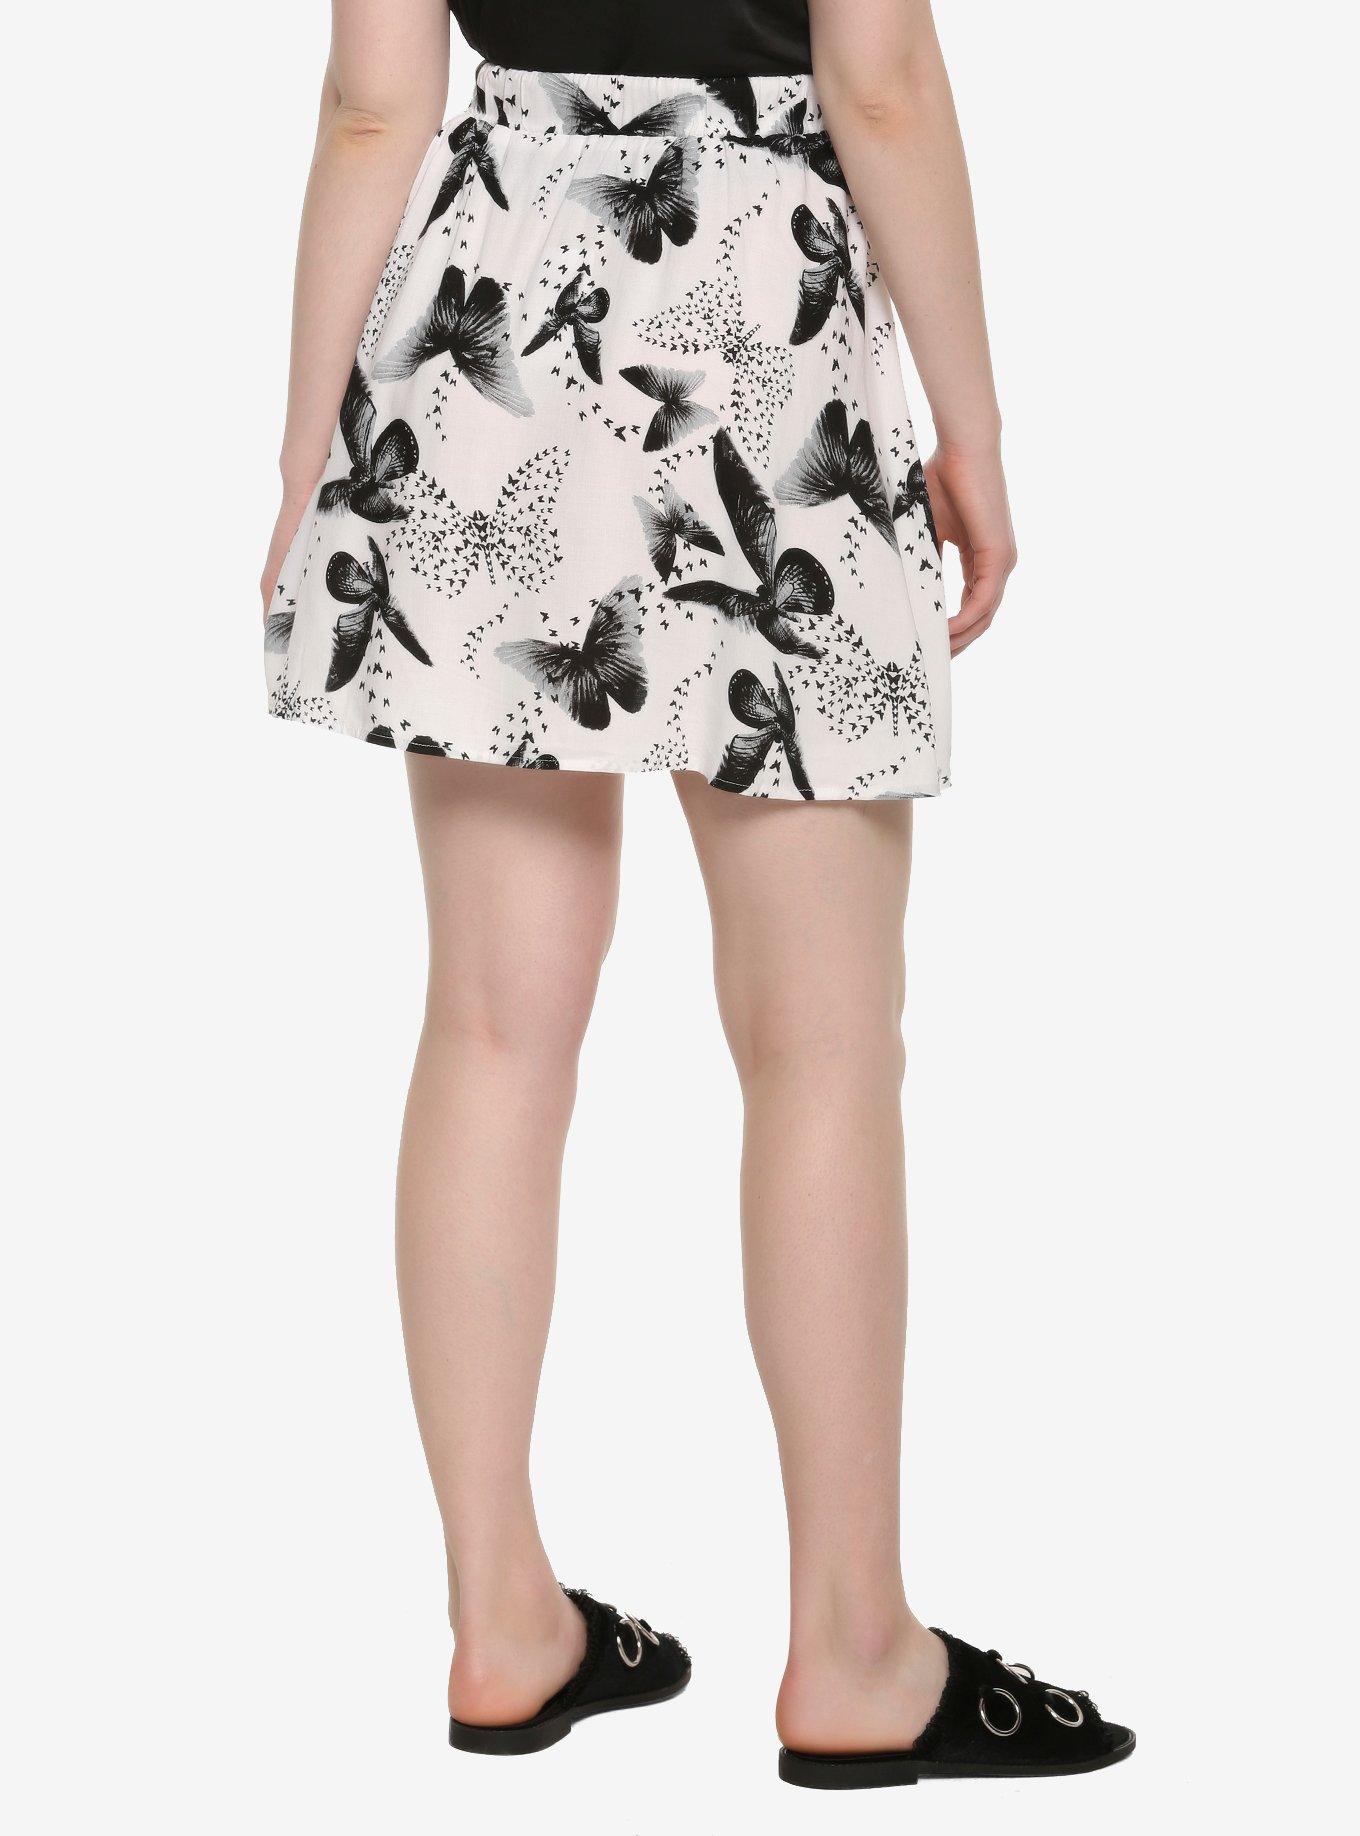 Black & White Butterfly Print Skirt, MULTI, alternate